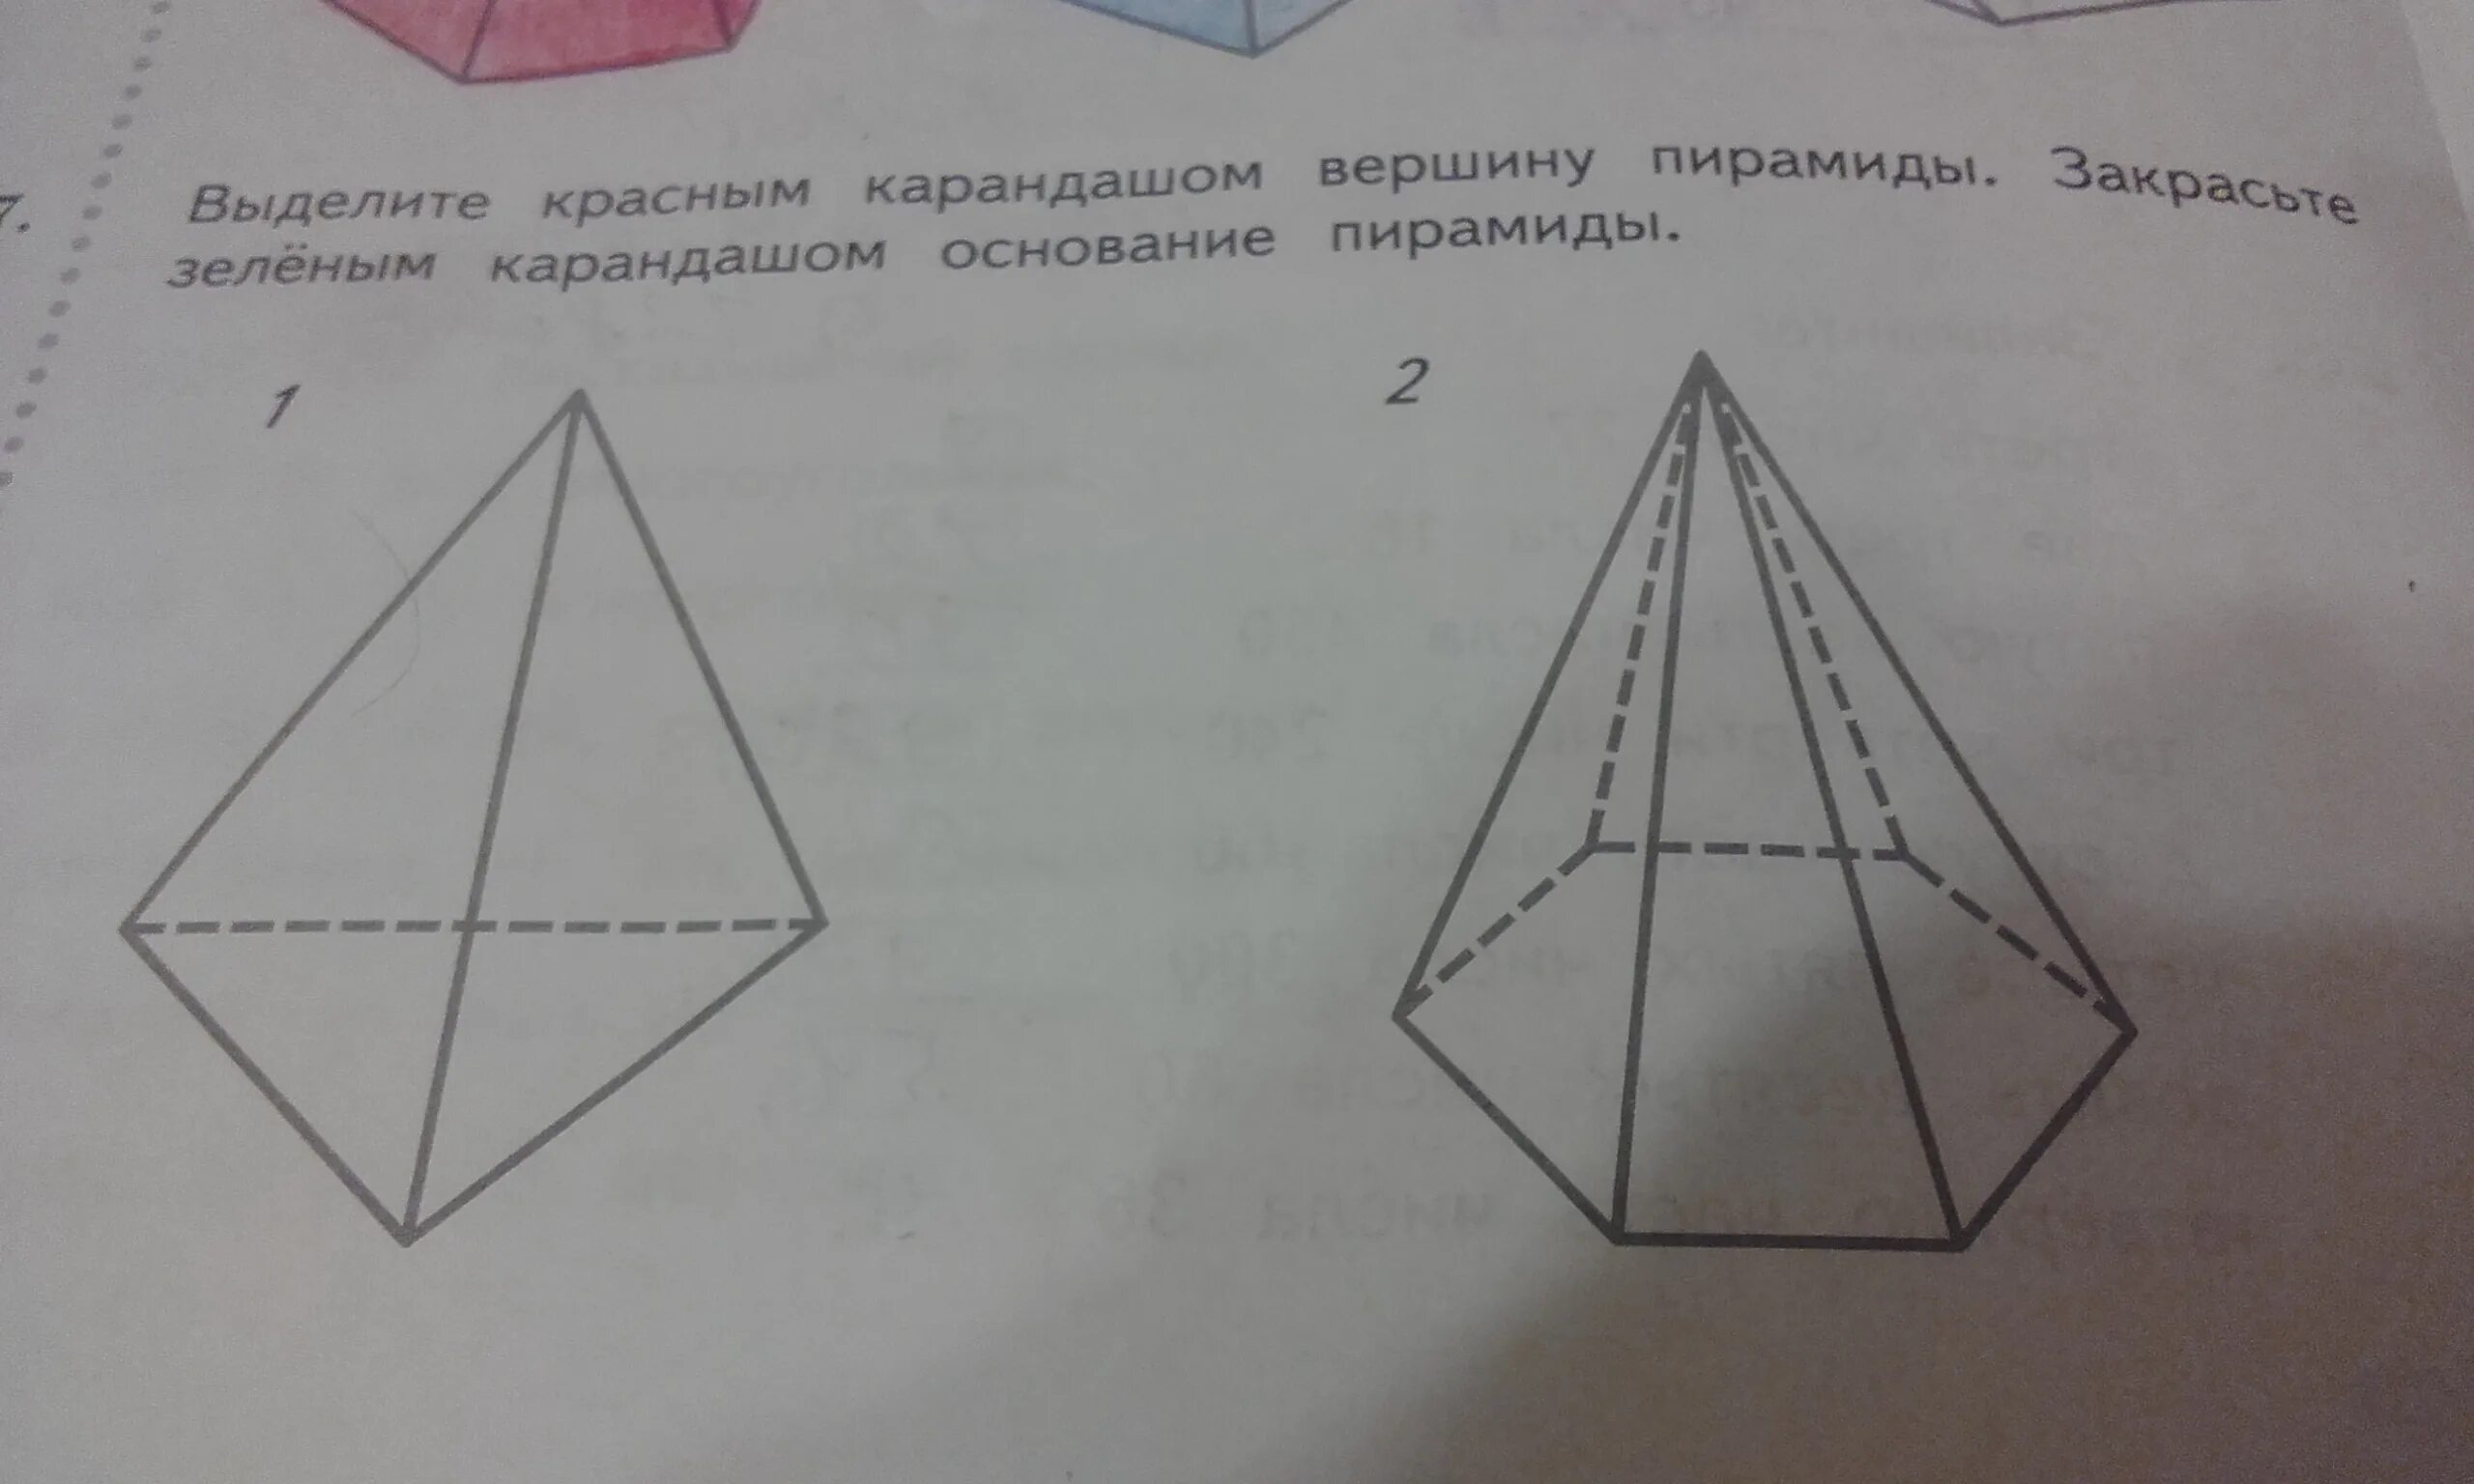 4 ребра 4 вершины. Выделите красным карандашом вершины. Выделите красным карандашом вершины пирамиды закрасьте. Пирамиды многогранники рисунок карандашом. Выделите на рисунке красным карандашом ломаную.